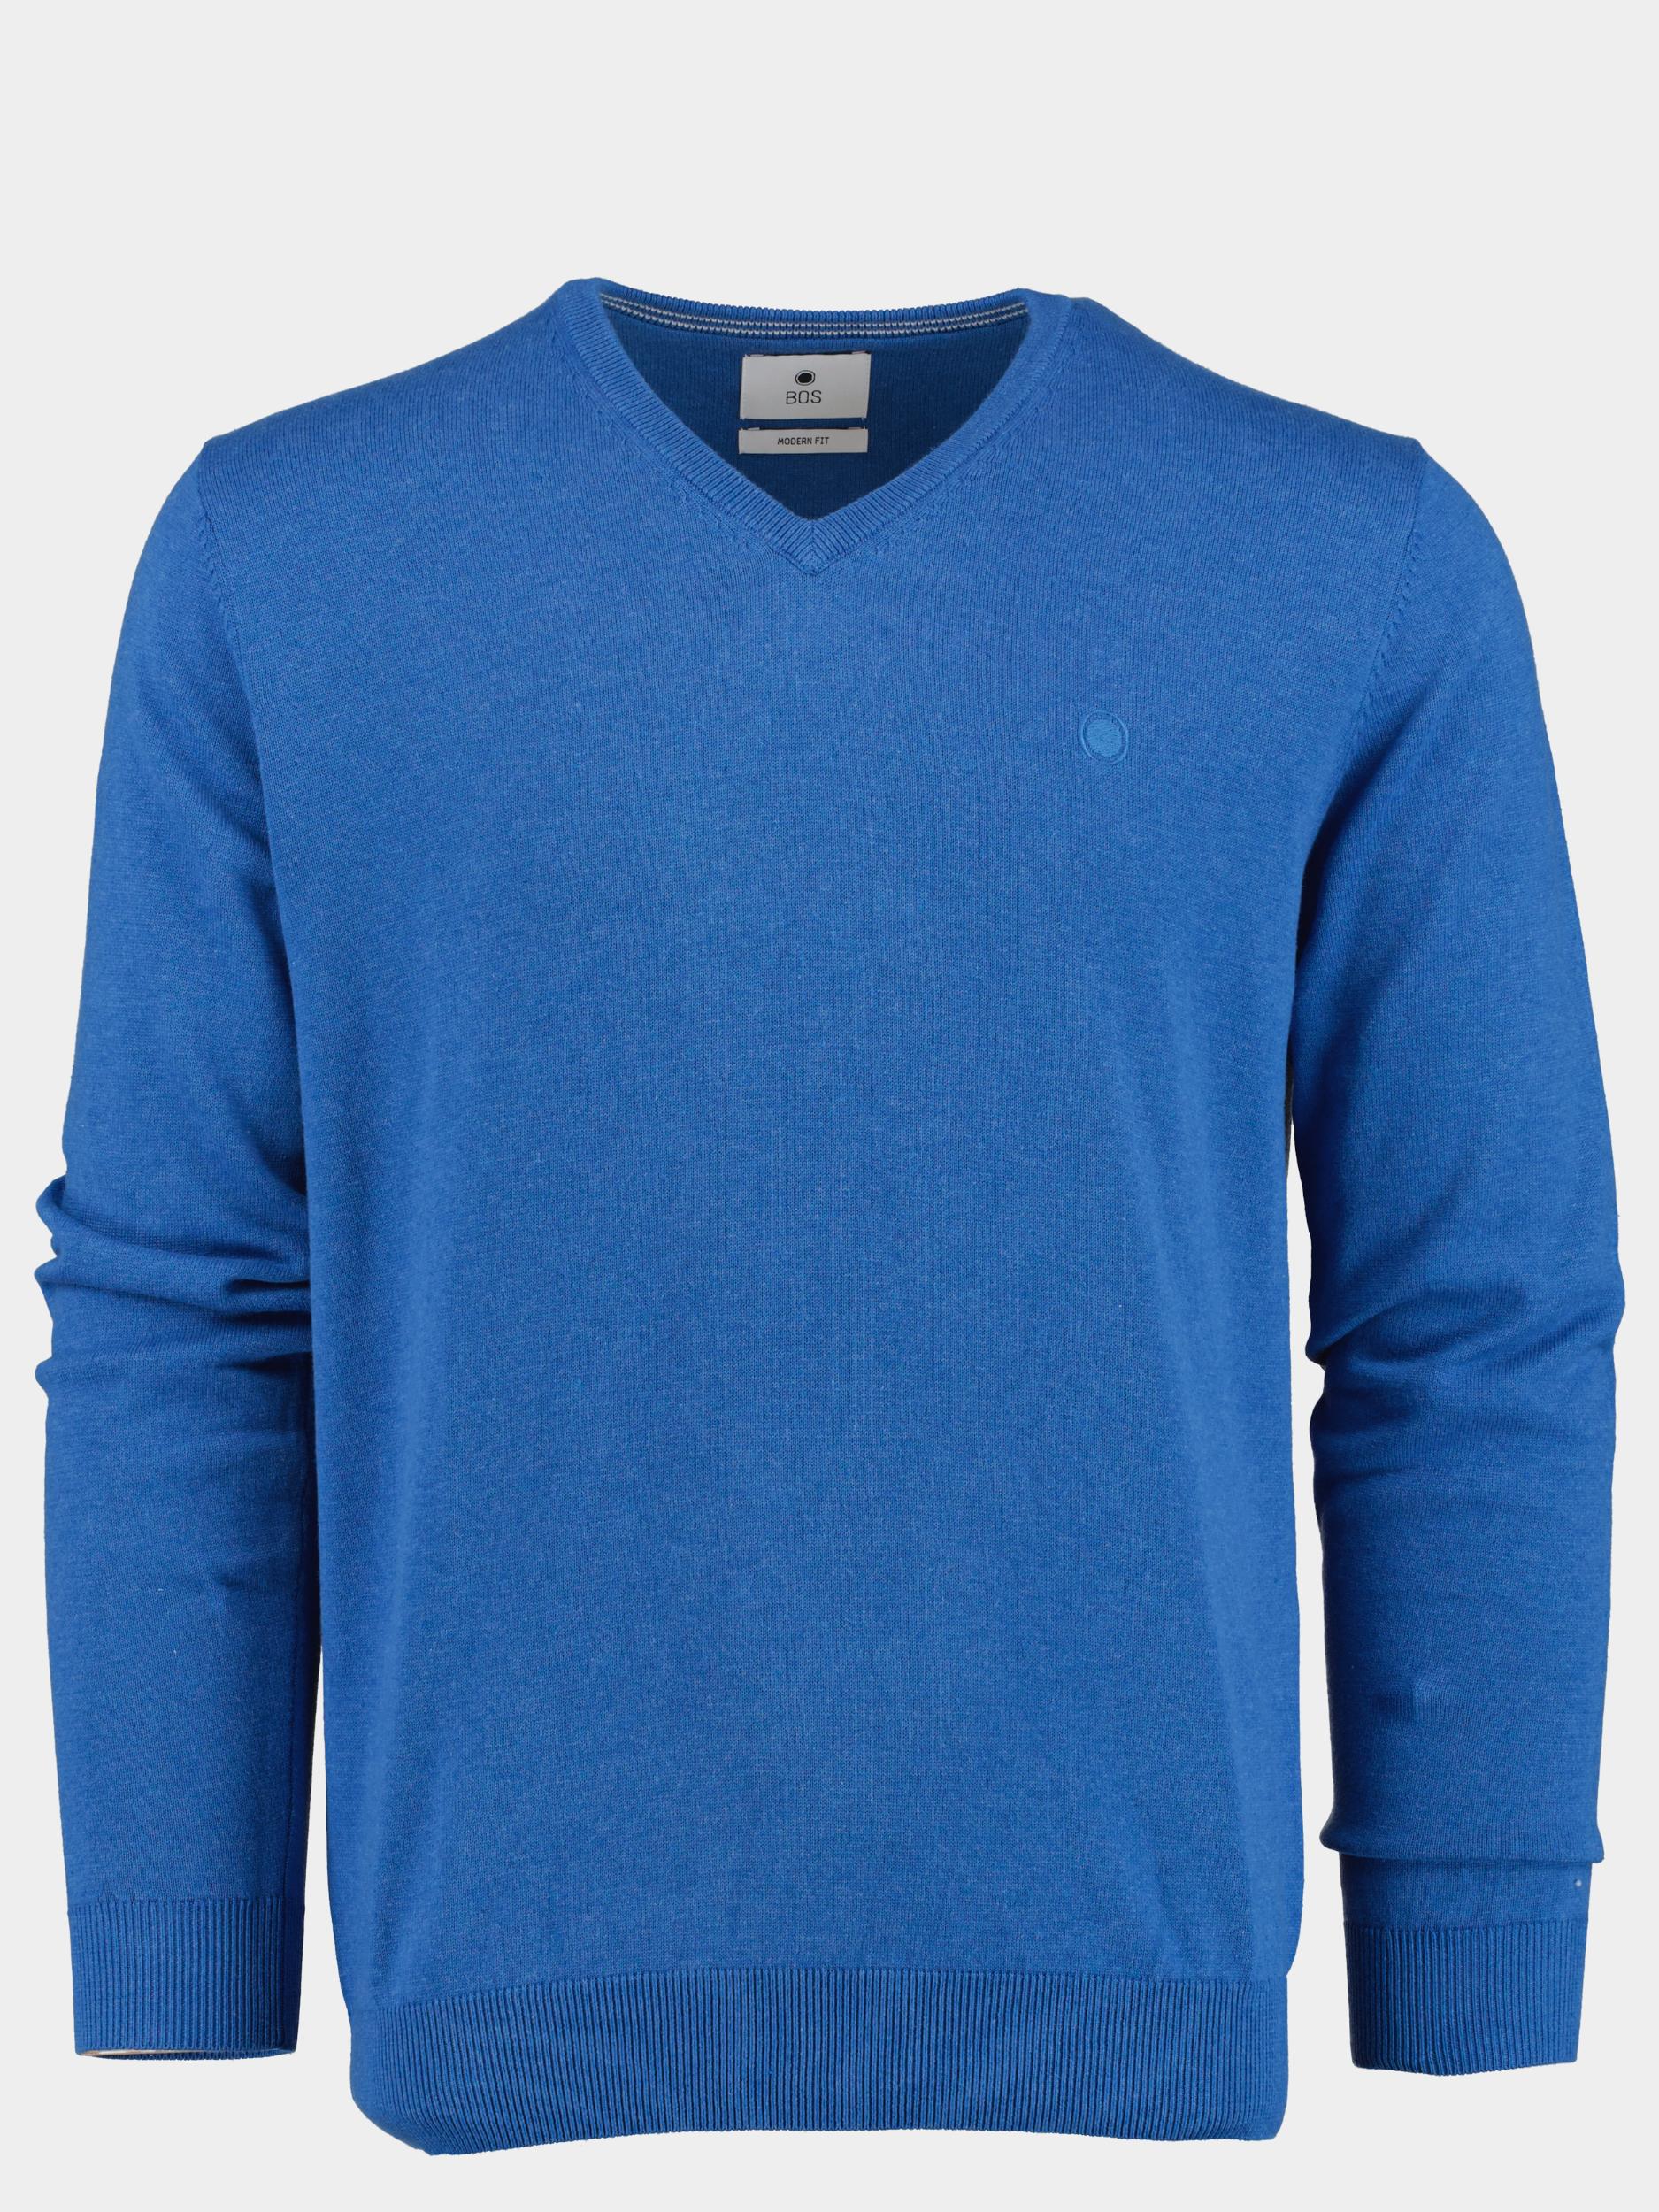 Bos Bright Blue Pullover vince v-neck pullover flat kn 24105vi01bo/240 blue